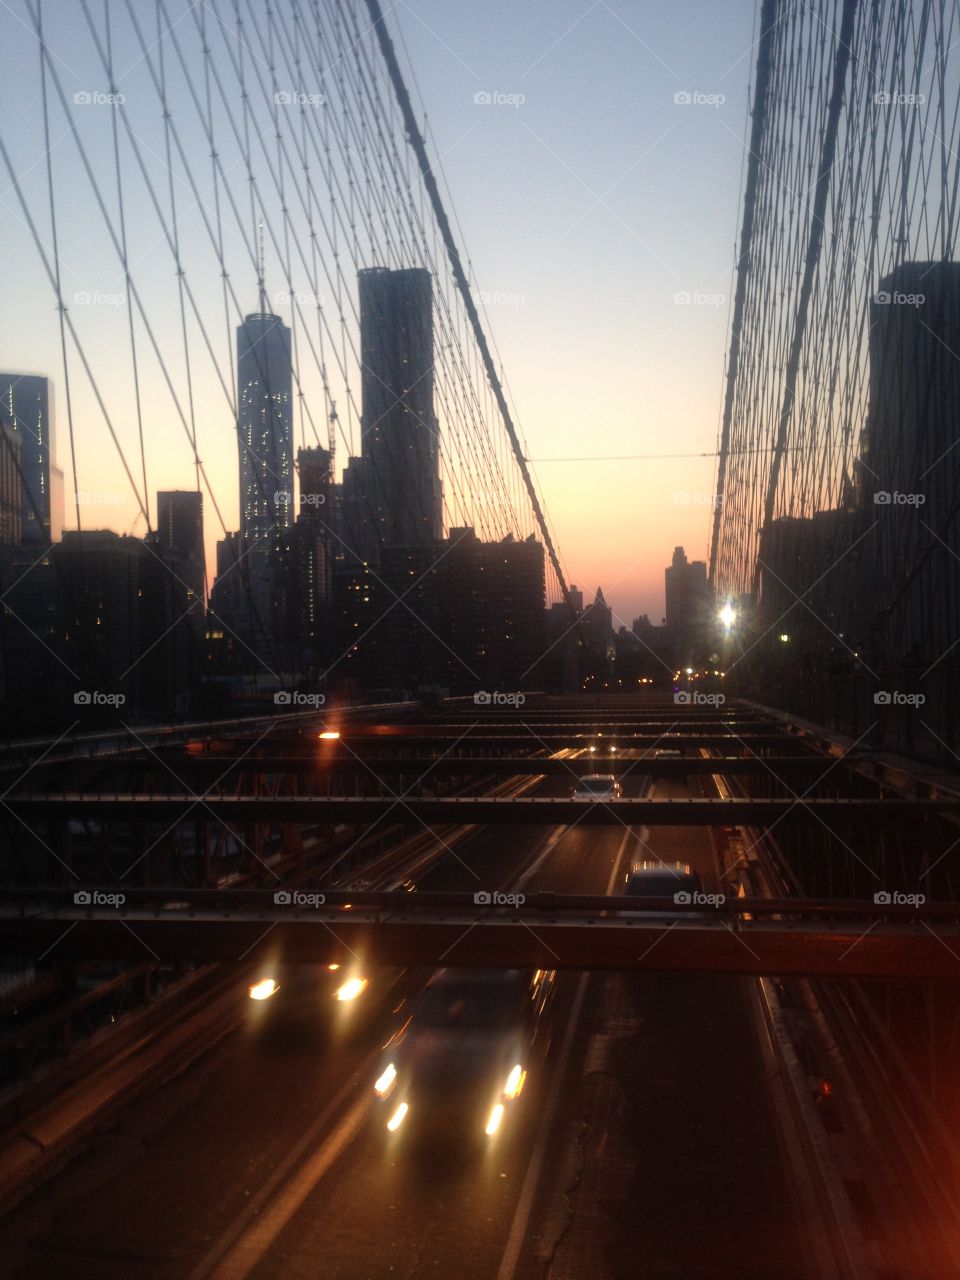 No sleep 'till Brooklyn . Brooklyn bridge at night